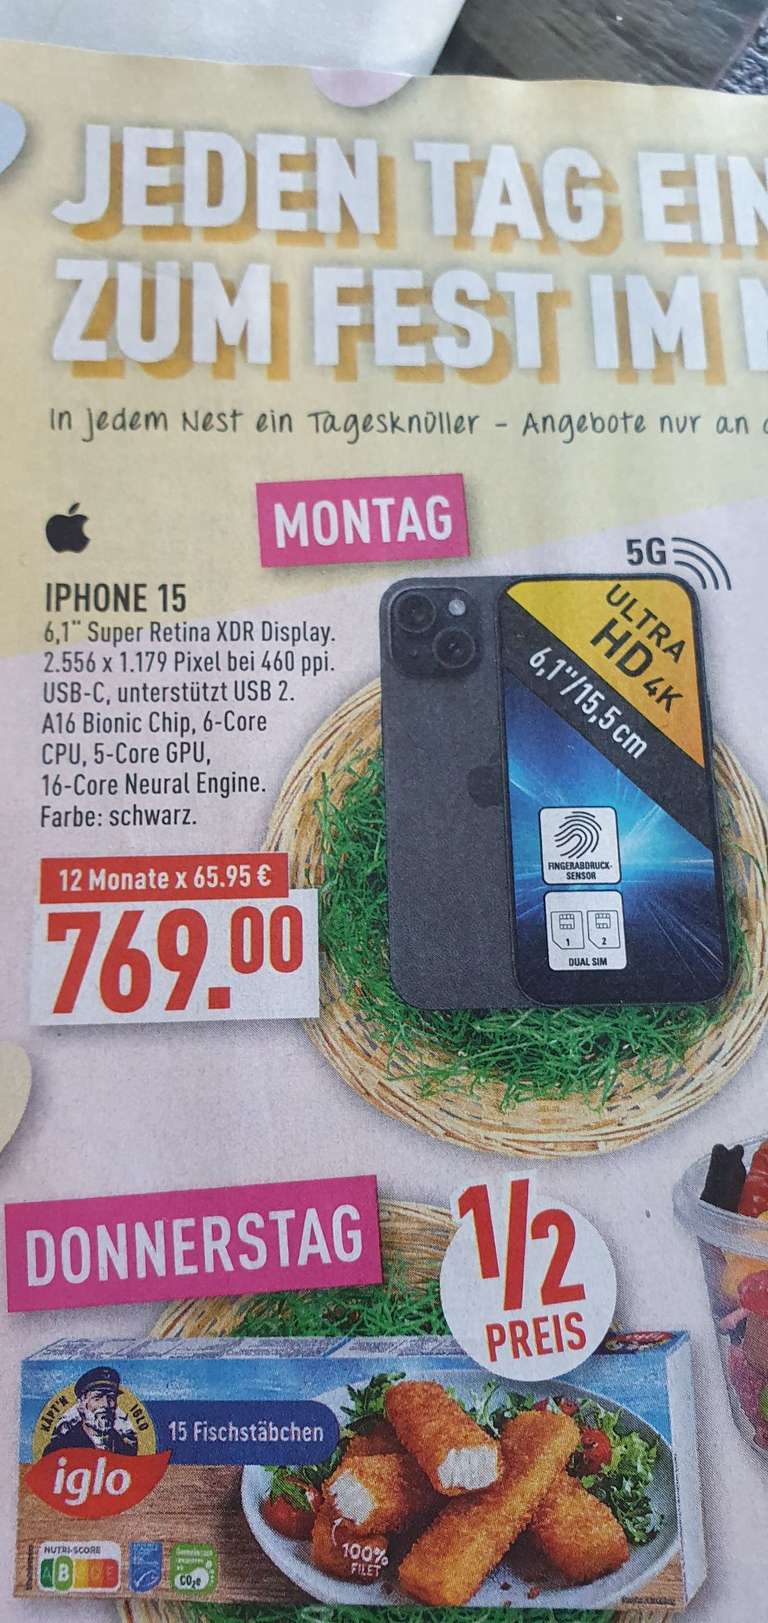 Iphone 15 schwarz (offline)Marktkauf nur Montag (vermutlich 128GB)